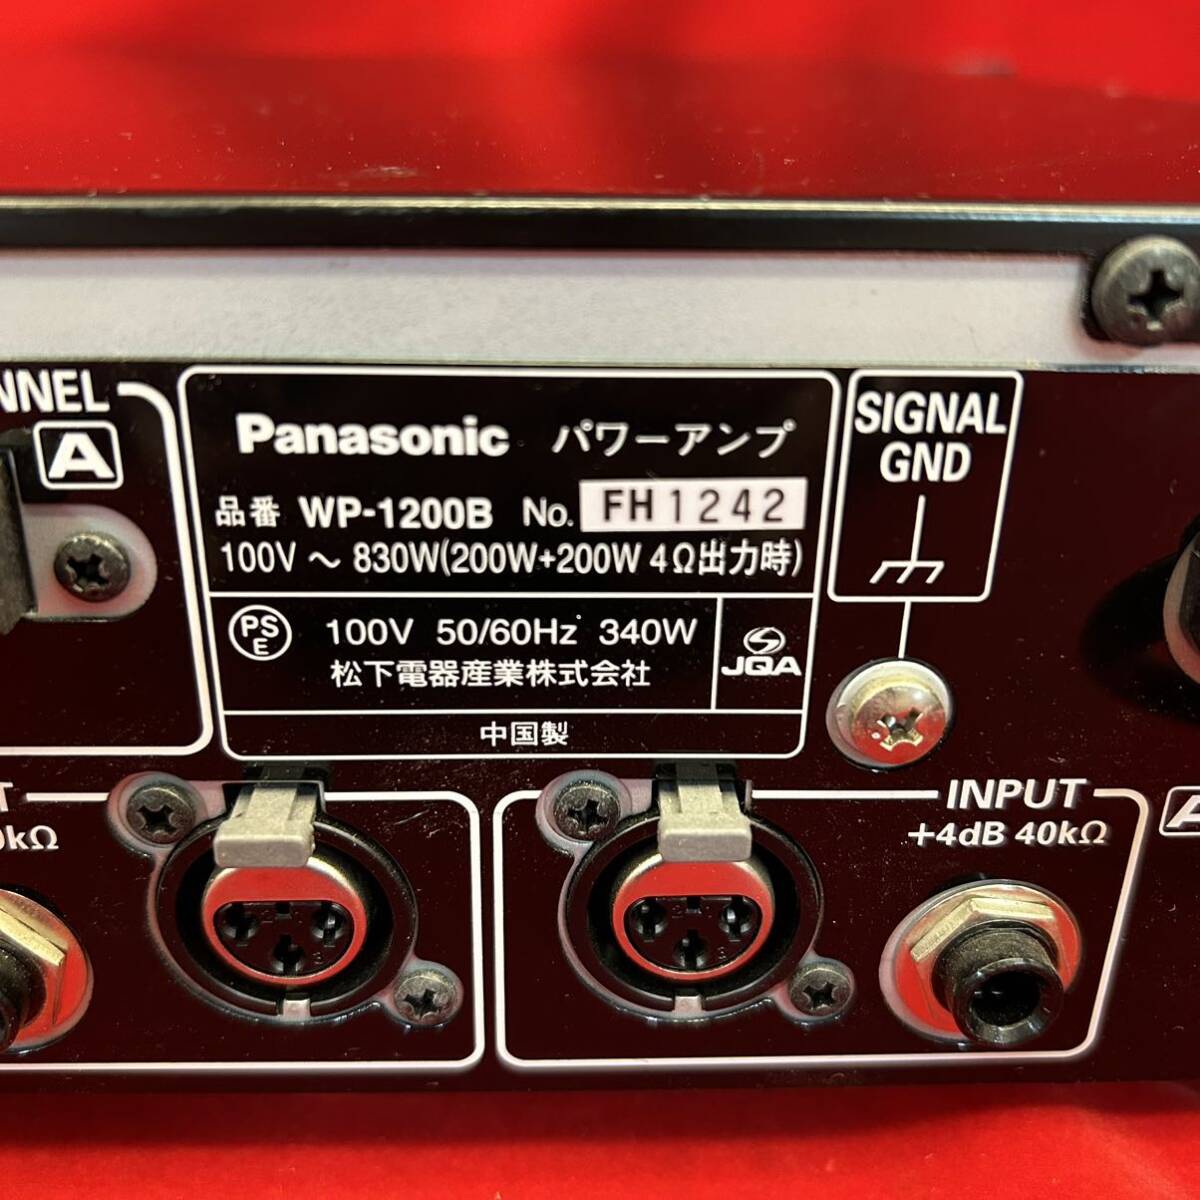 * электризация OK*Panasonic* усилитель мощности * Ram sa*RAMSA* акустическое оборудование * звуковая аппаратура *WP-1200B* Panasonic *SR(P110)